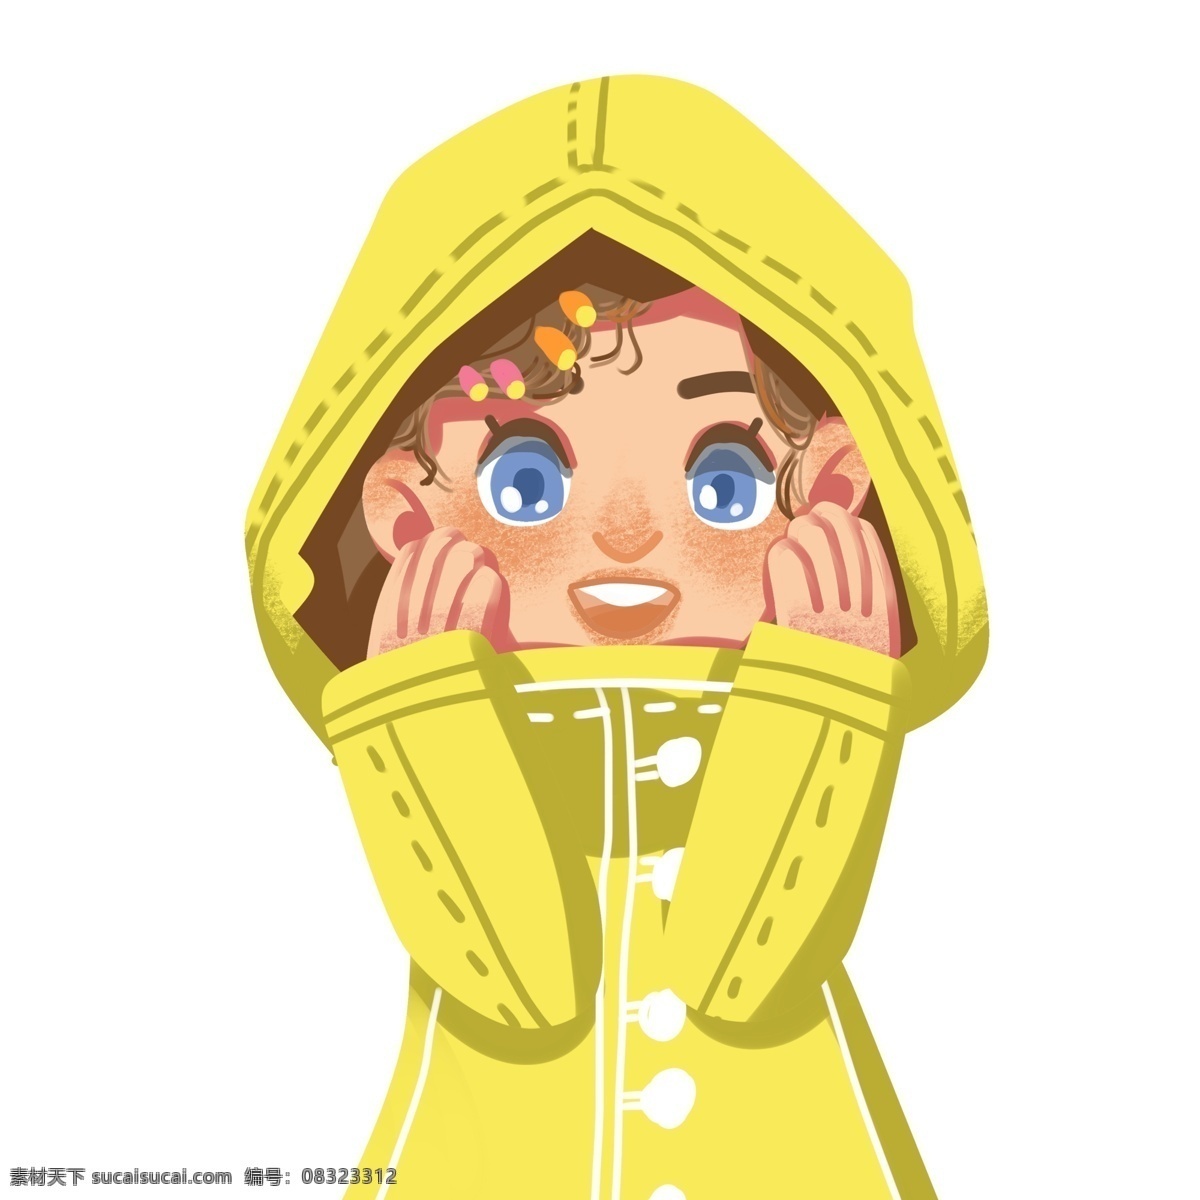 手绘 一个 穿着 雨衣 女孩 女孩儿 复古肌理 插画 女生 人物设计 大眼 微笑 高兴 黄色雨衣